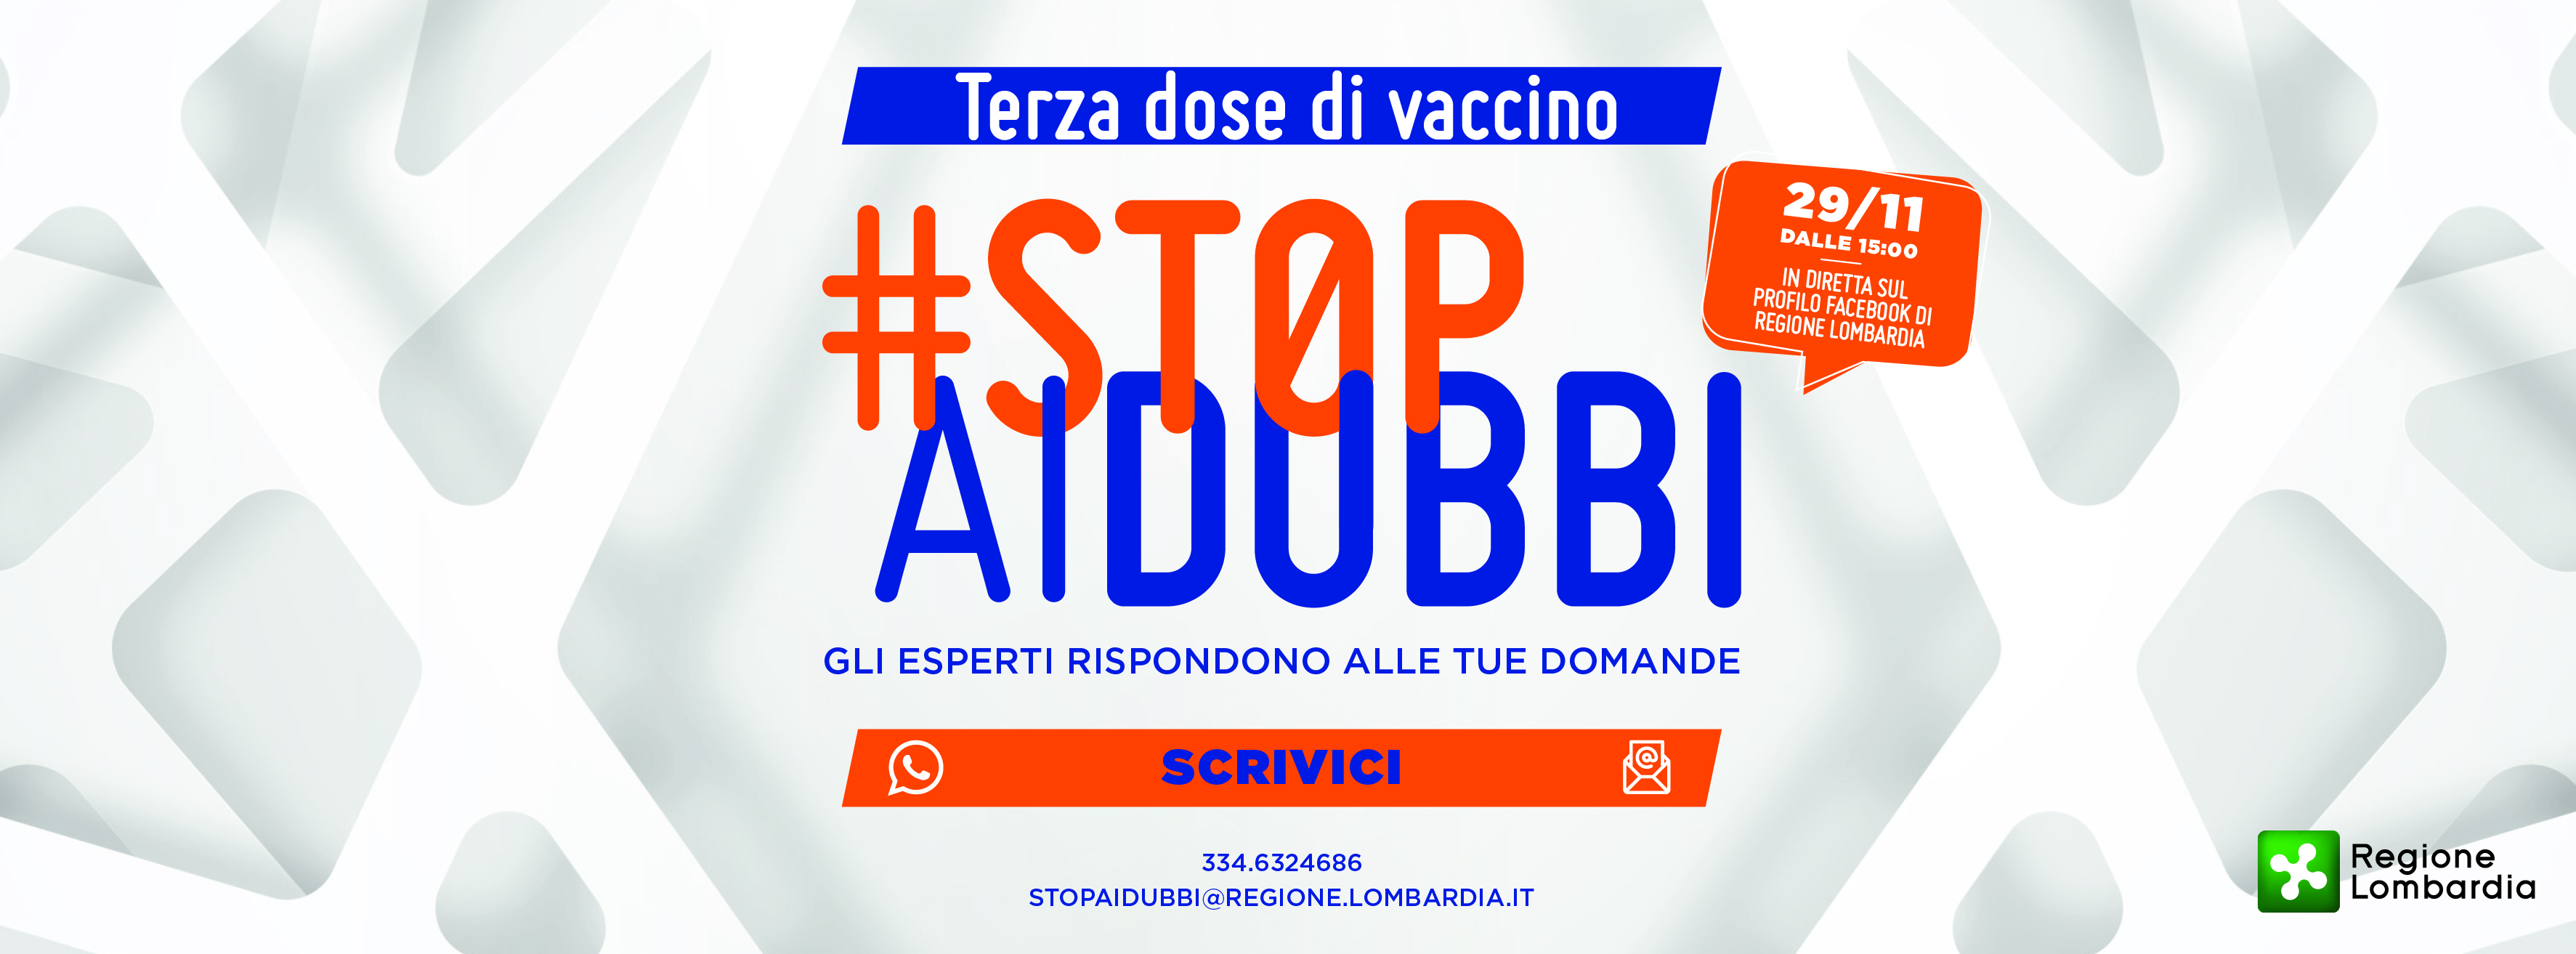 #STOPAIDUBBI. Terza dose di vaccino: Gli esperti rispondono alle tue domande